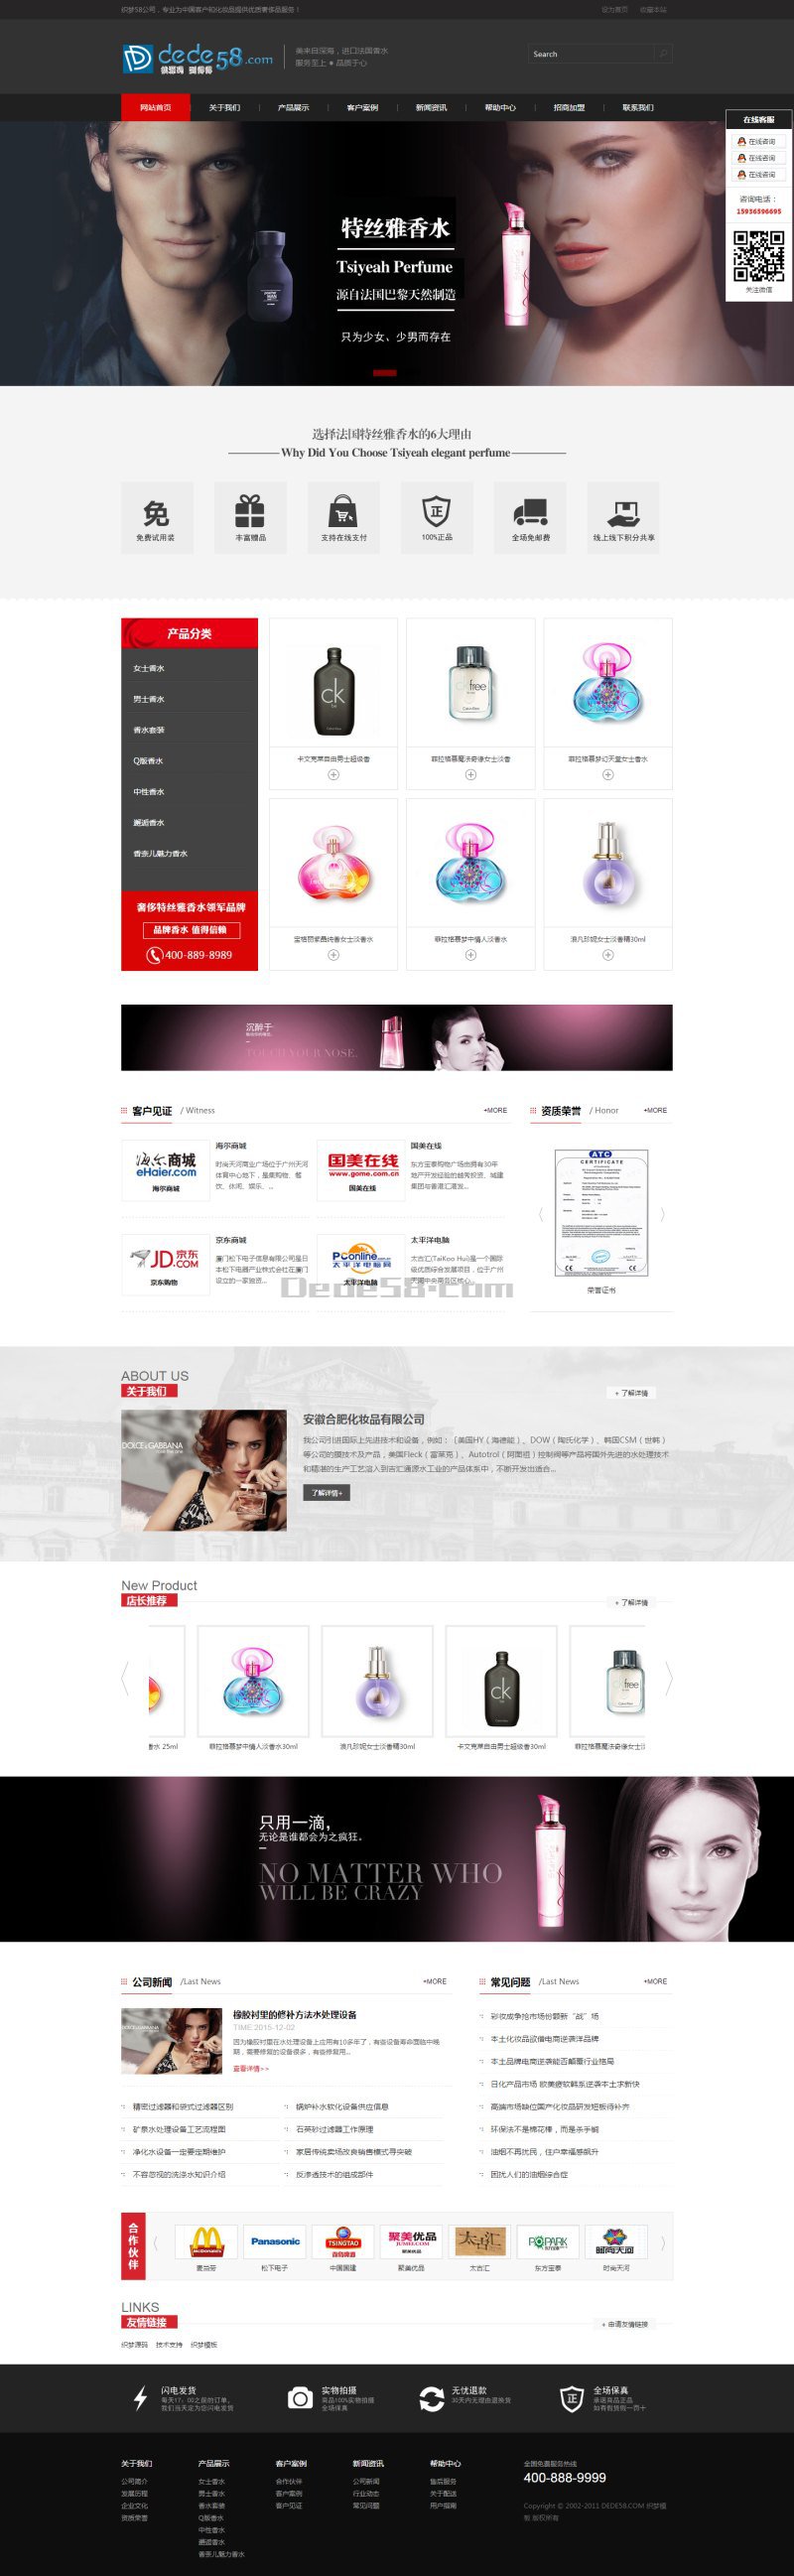 黑色化妆品类企业网站织梦模板 第1张